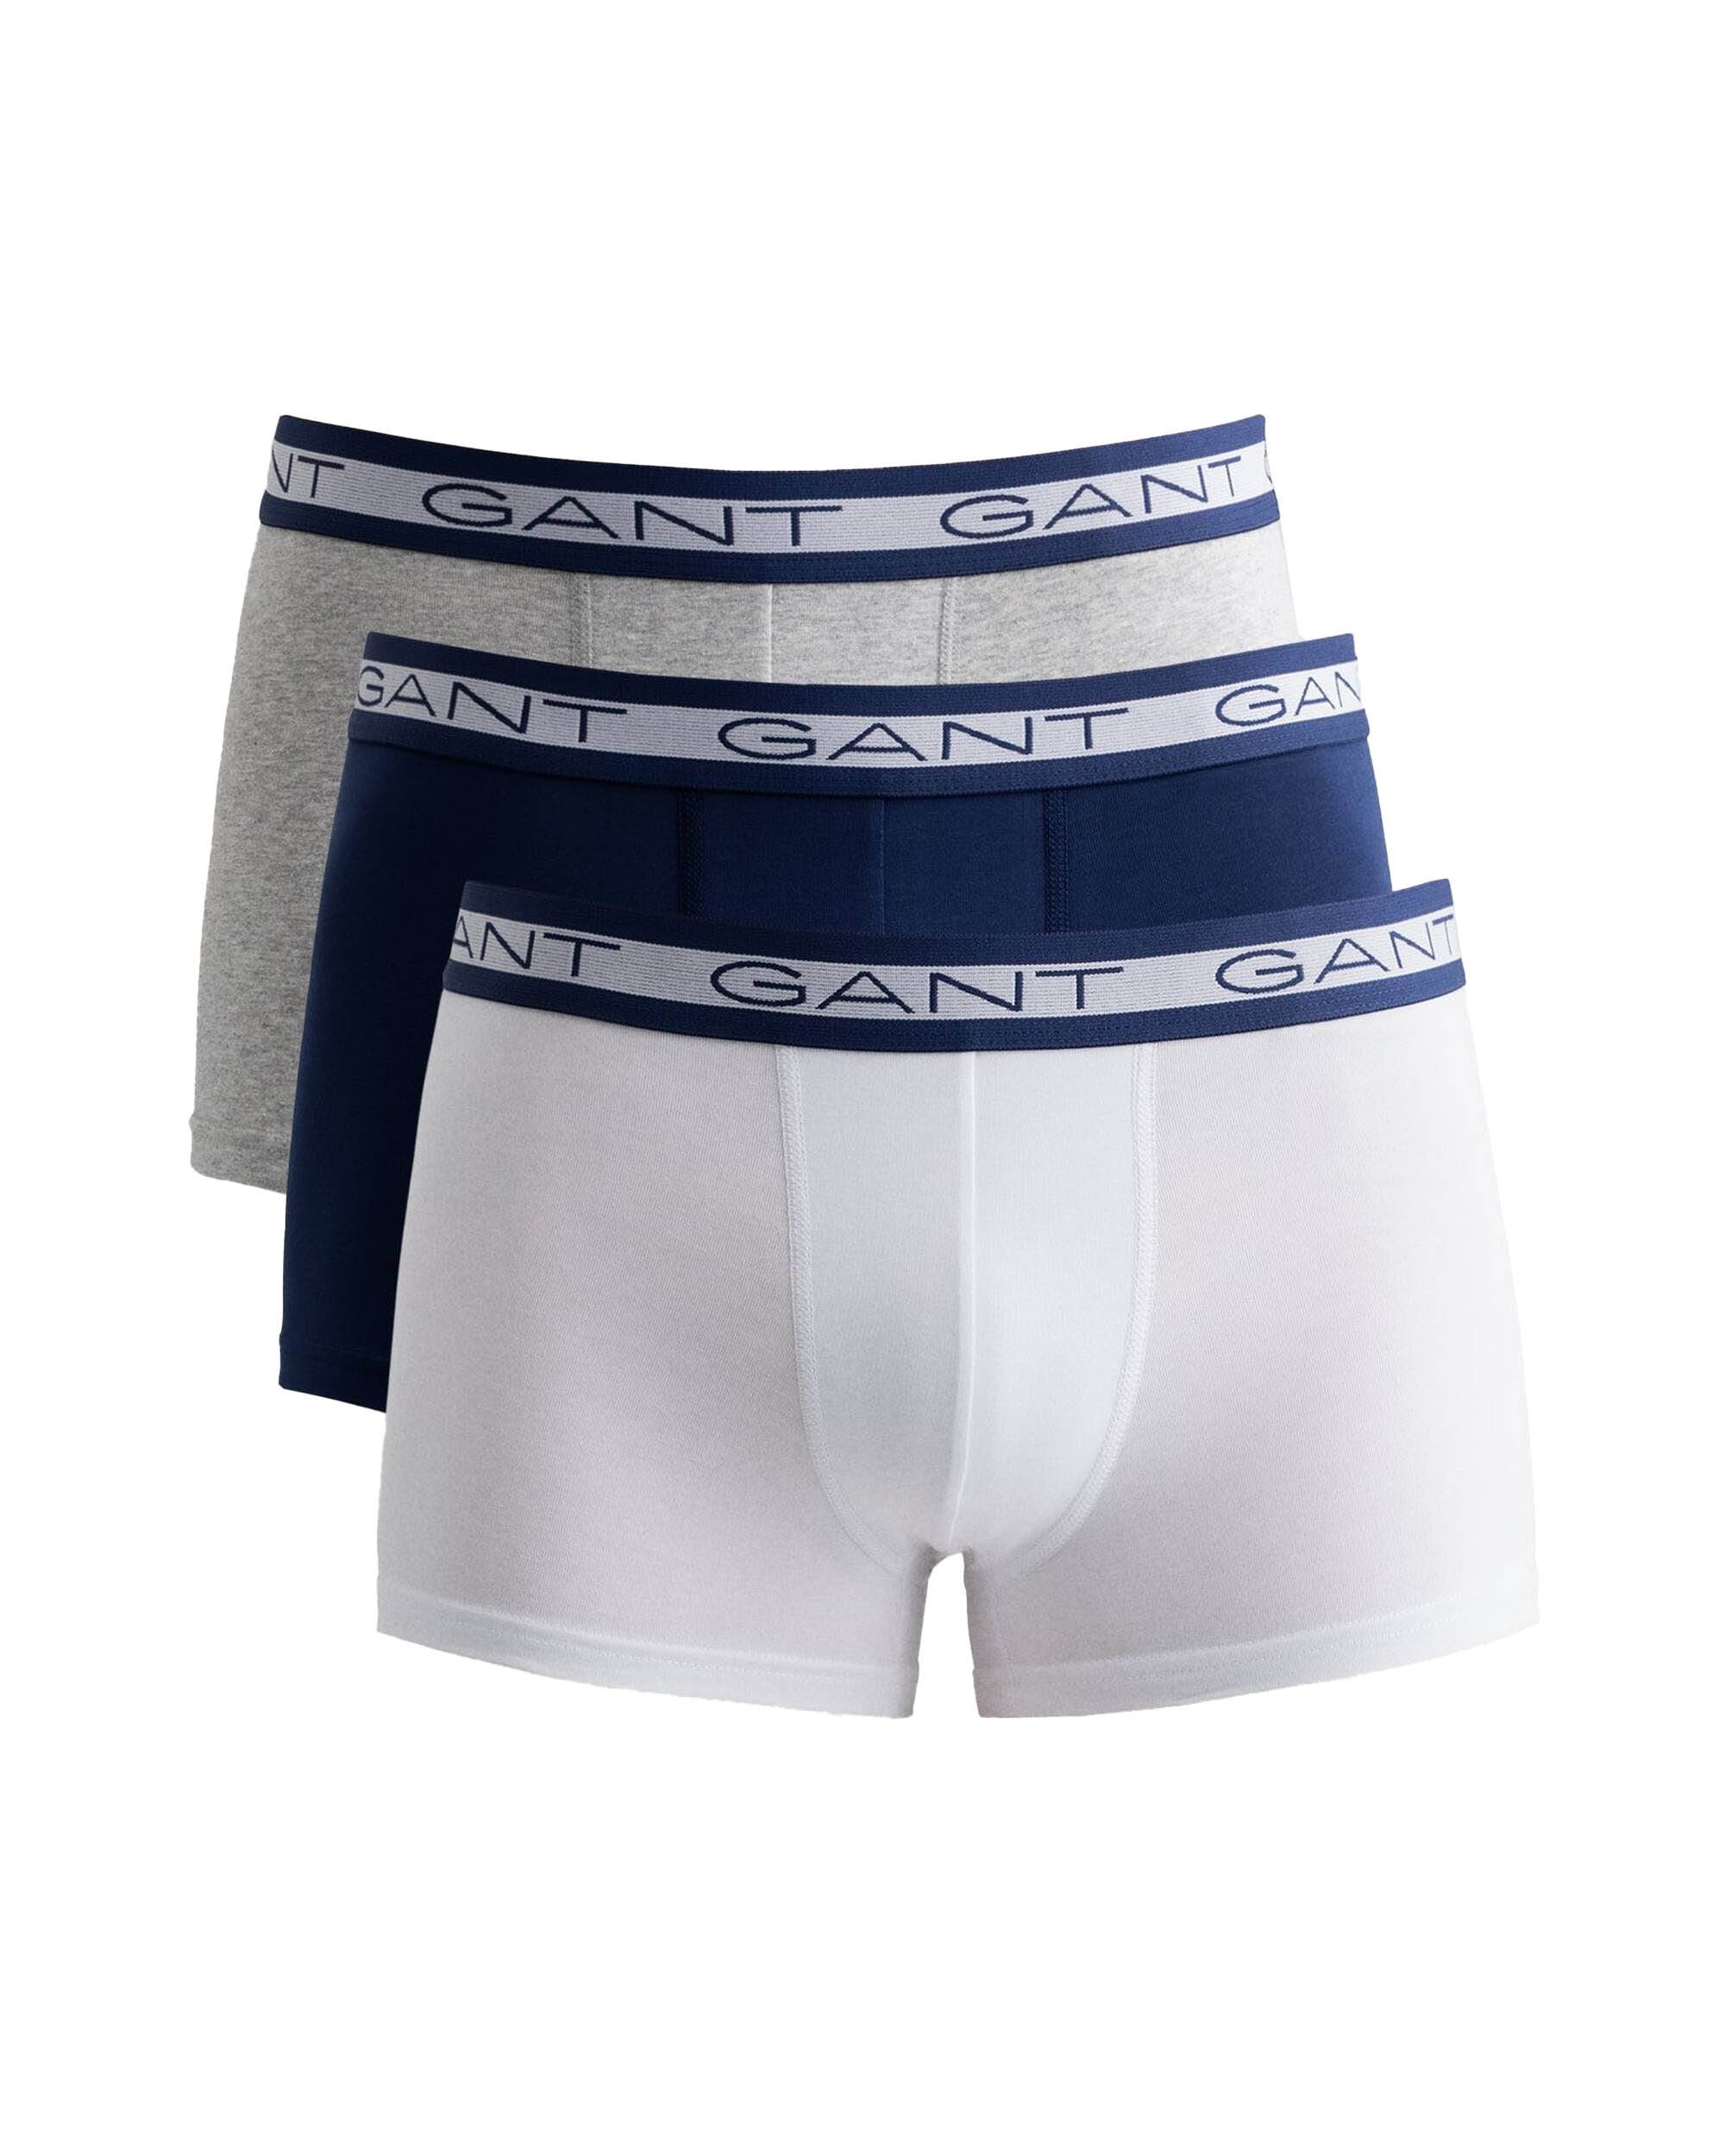 günstig kaufen Gant Boxer Herren Shorts, Weiß/Blau/Grau Boxer Trunks, - Cotton 3er Pack